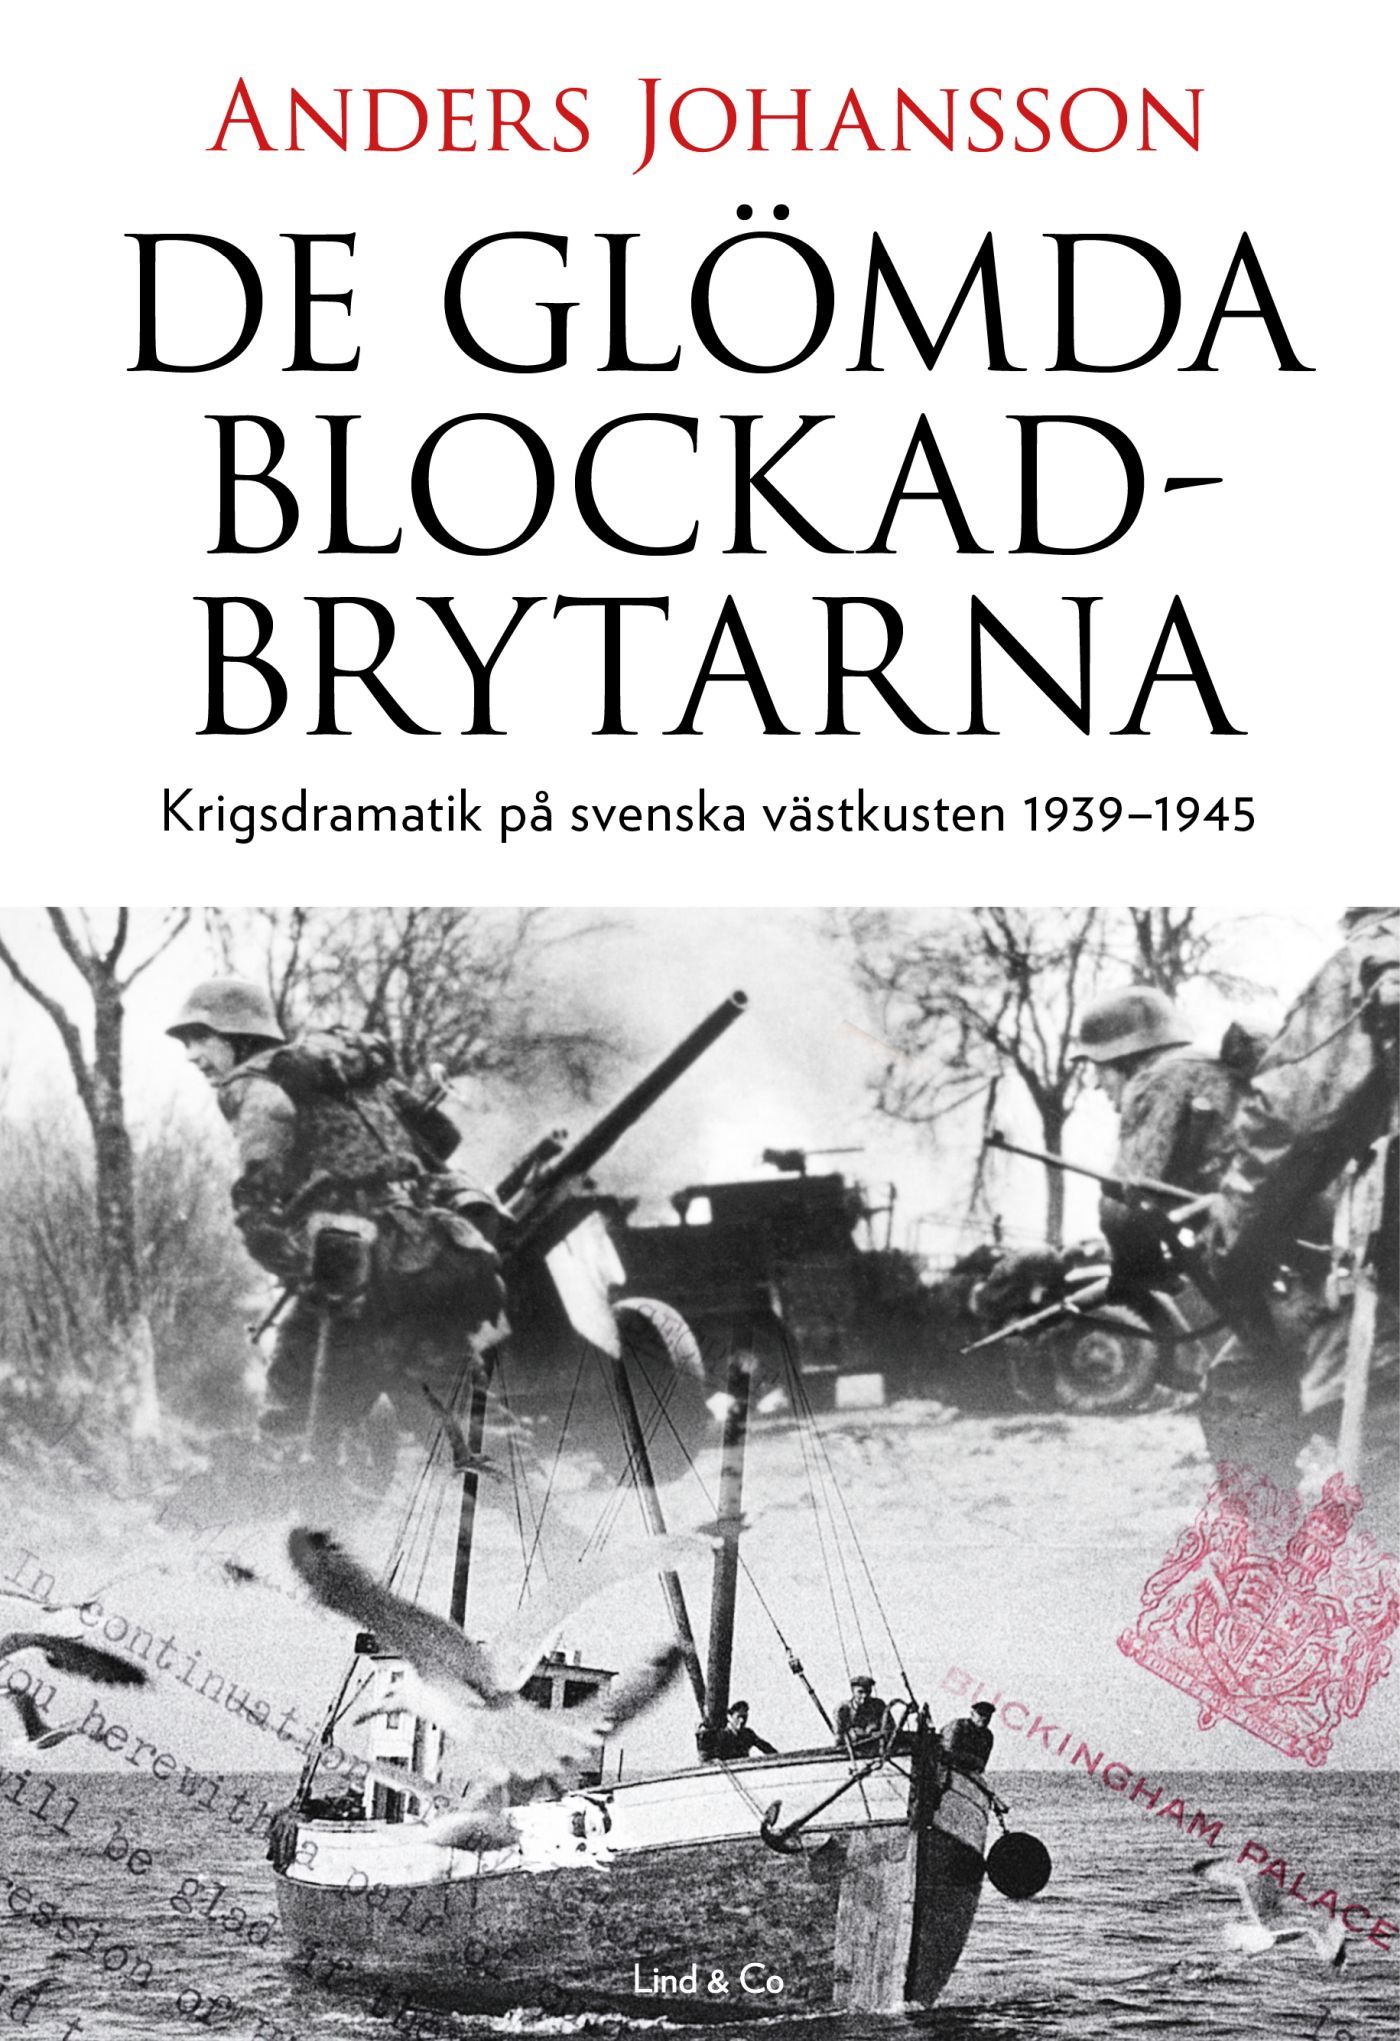 De glömda blockadbrytarna : Krigsdramatik på svenska västkusten 1939-1945, eBook by Anders Johansson